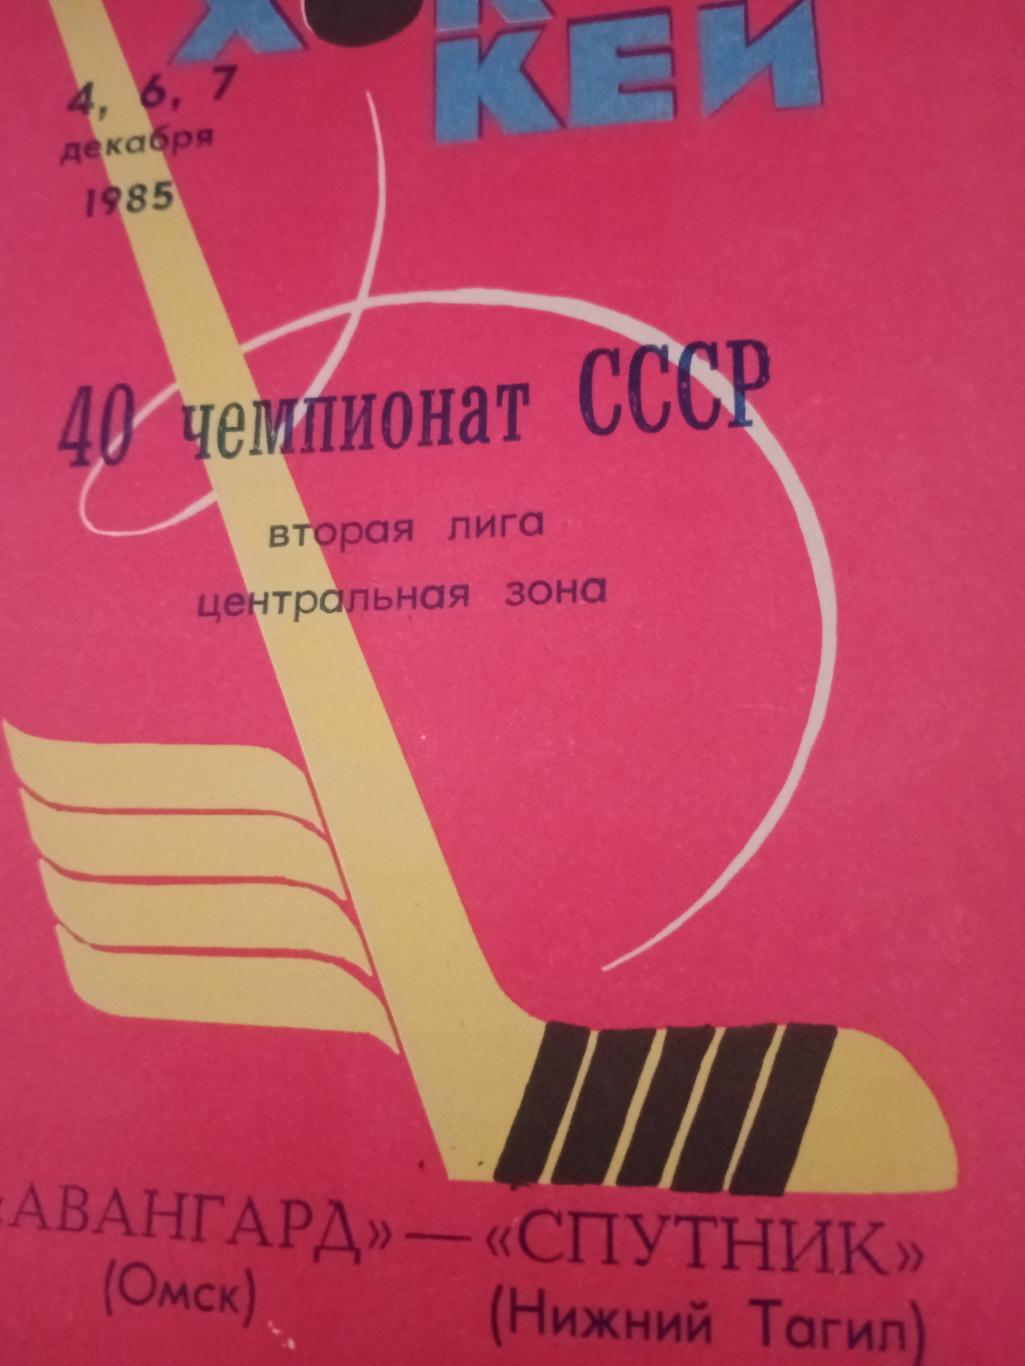 Авангард Омск - Спутник Нижний Тагил. 4, 6 и 7 декабря 1985 год